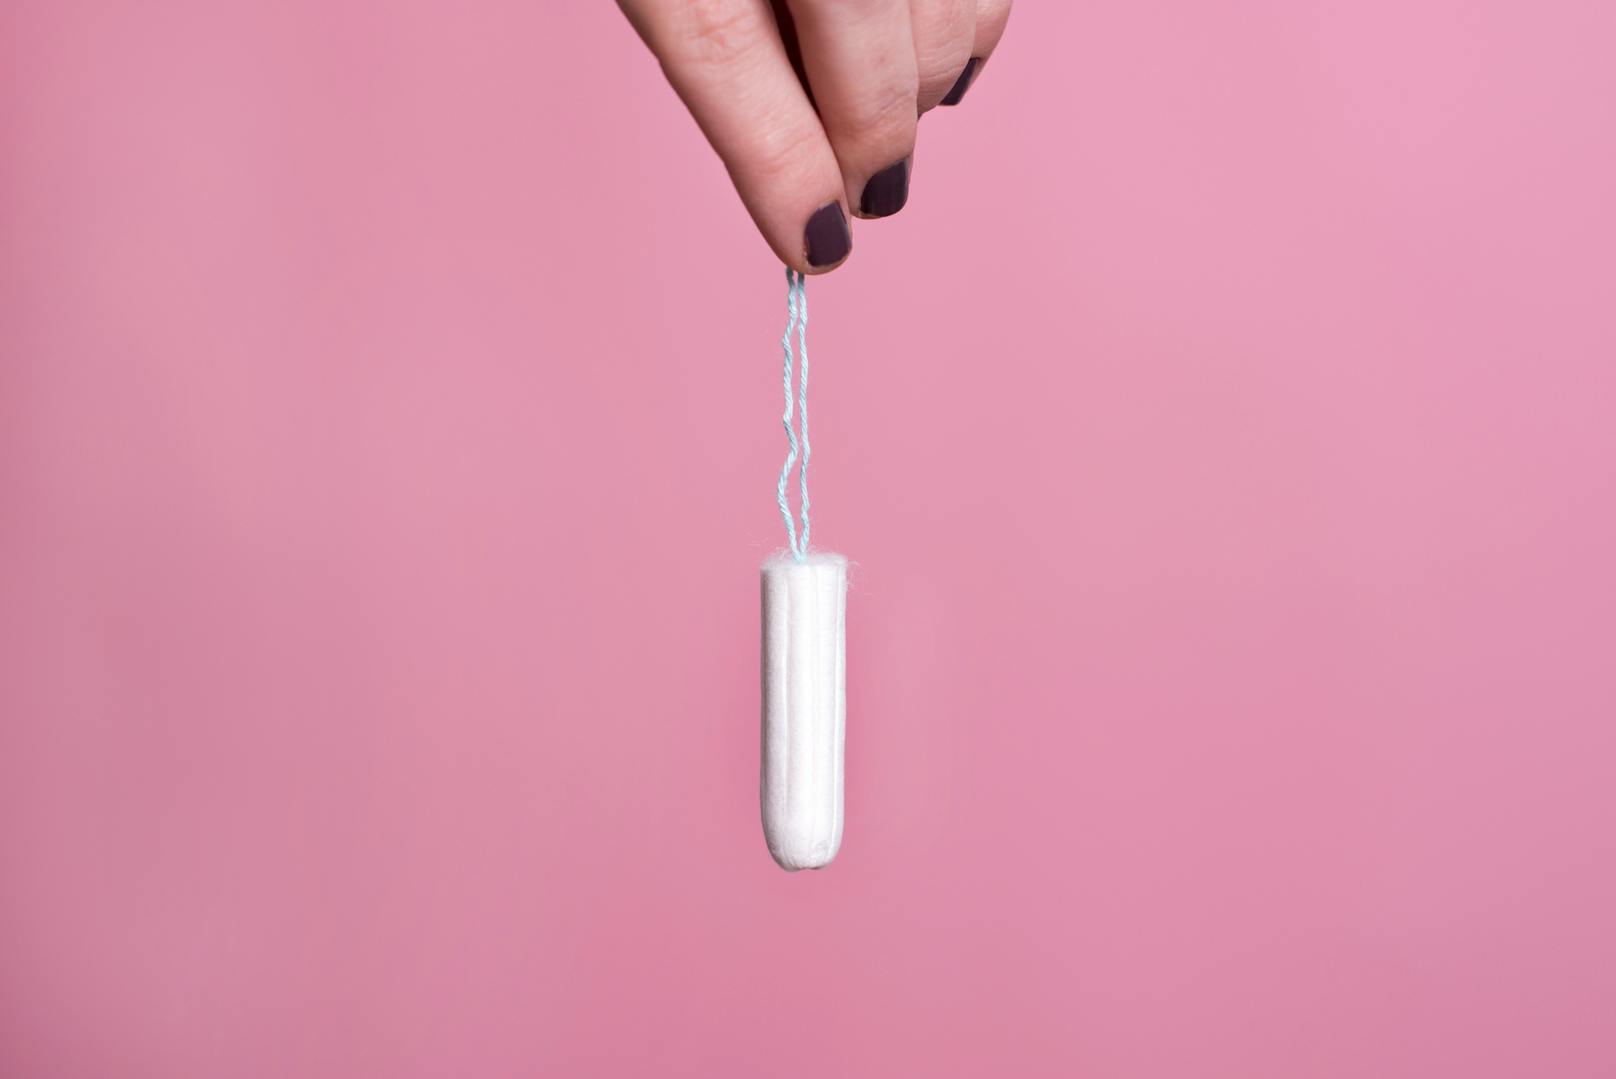 Viele Frauen vergessen schon einmal ein Tampon zu entfernen oder sind sich nicht sicher, ob sie es herausgenommen haben. <br>